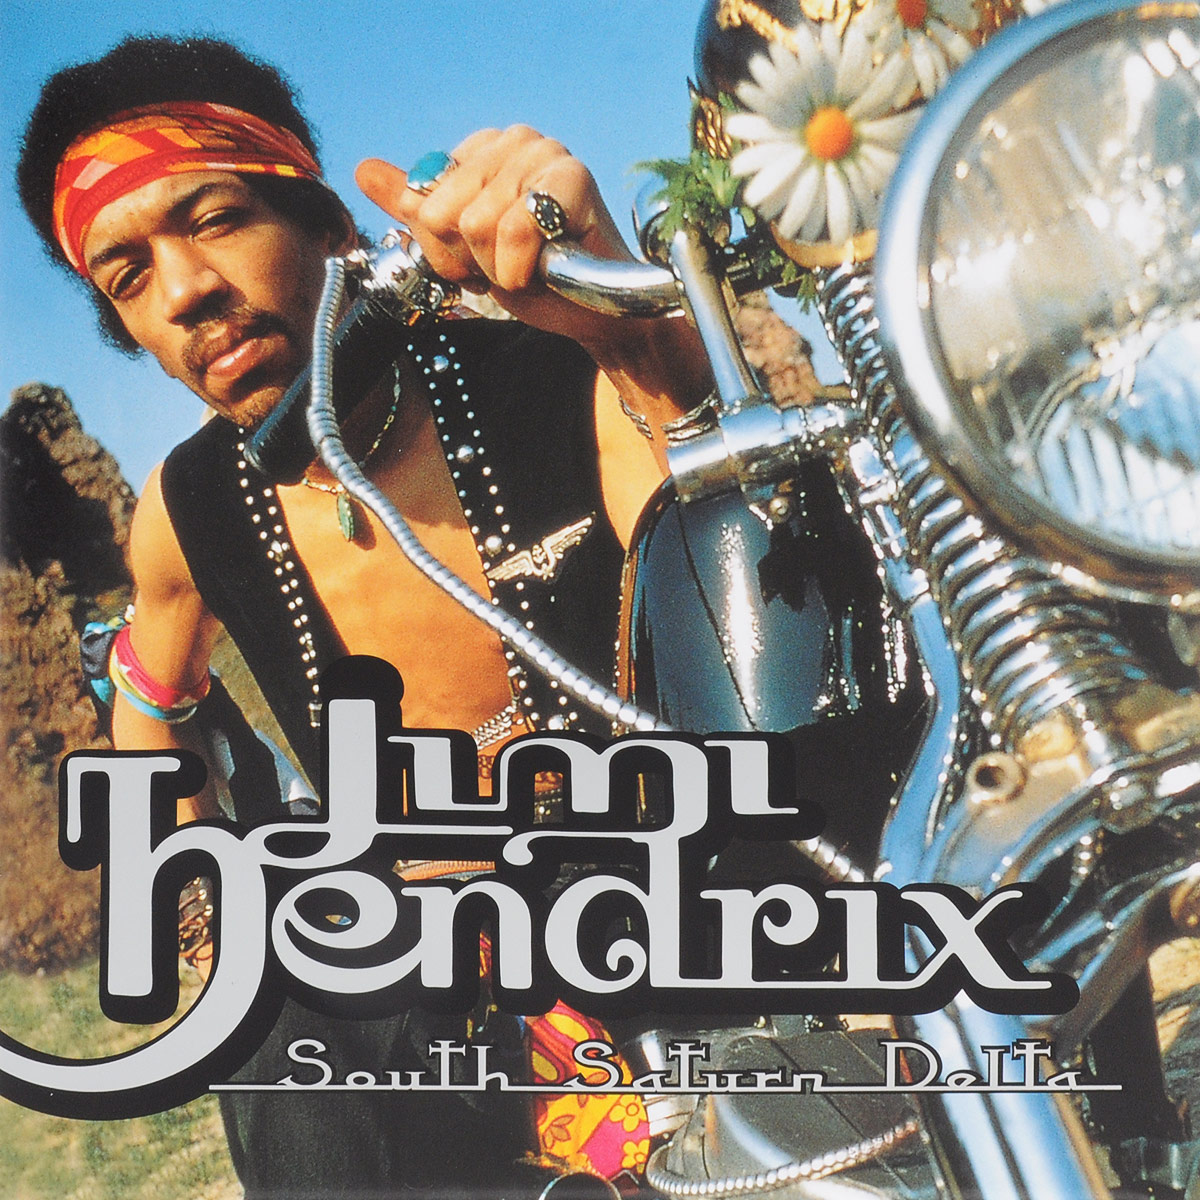 Jimi Hendrix. South Saturn Delta (2 LP)